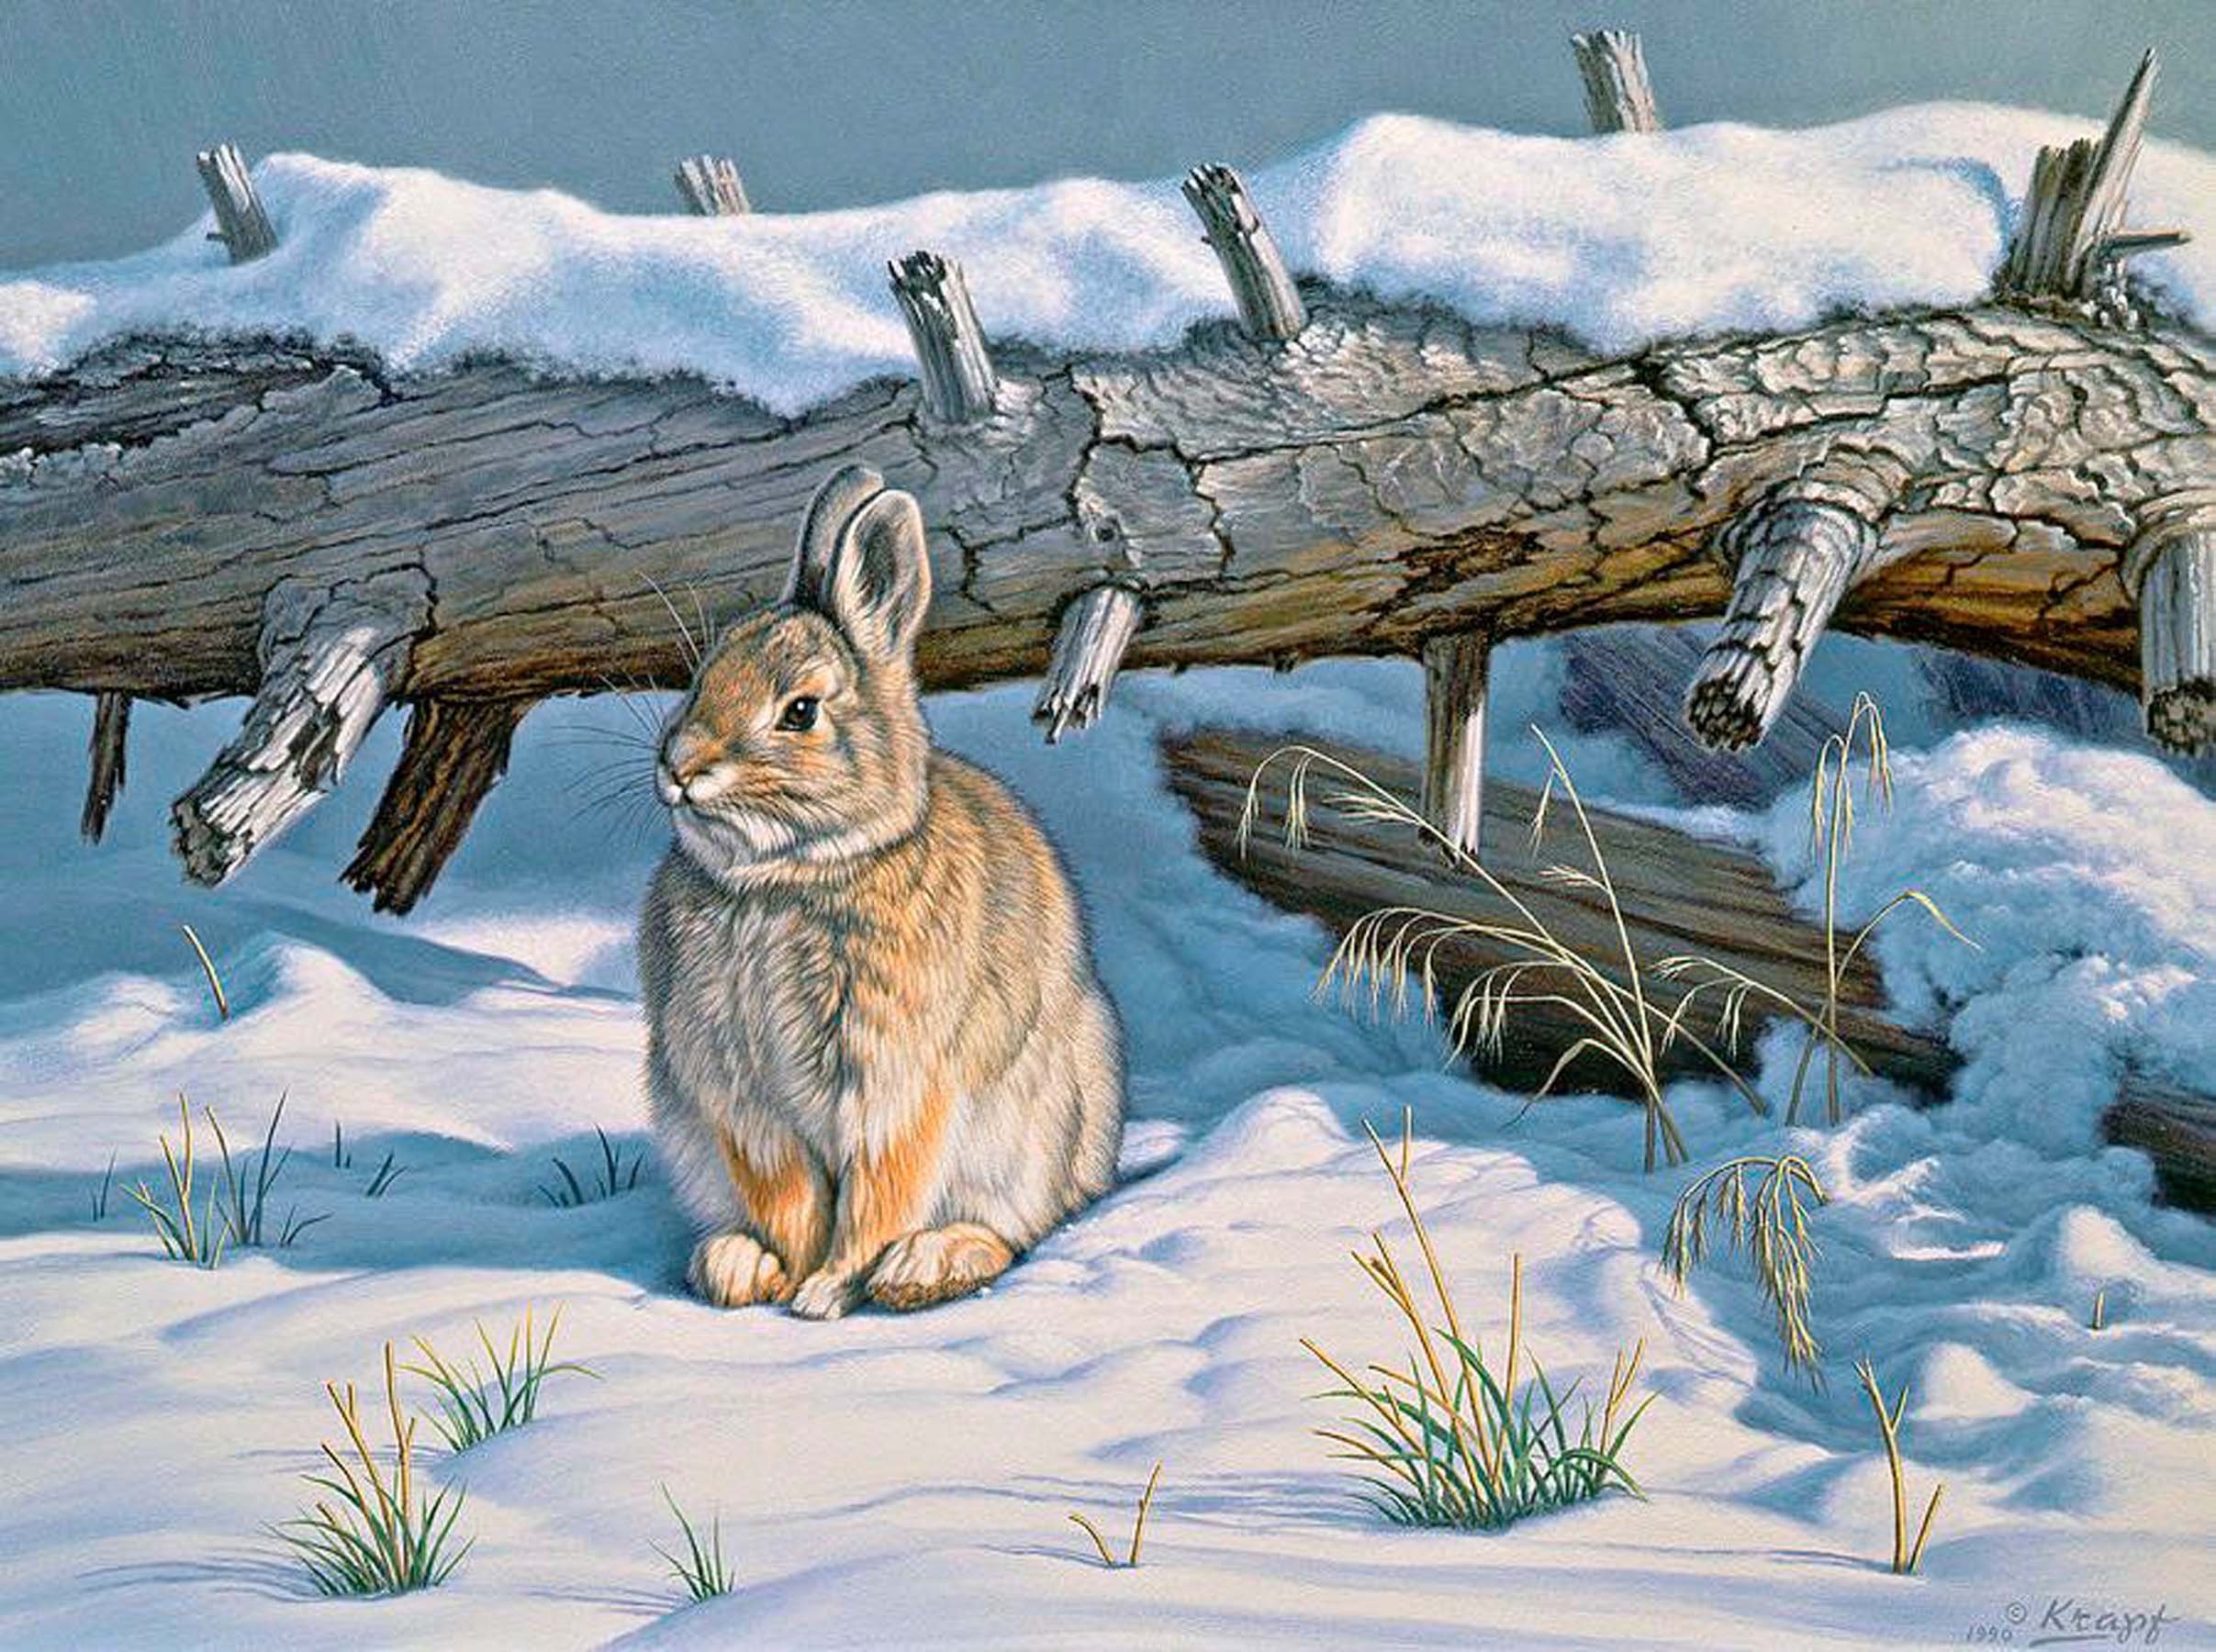 Зайцев спой. Пауль Крапф заяц. Заяц Беляк в лесу рисунок. Заяц художники анималисты. Художник - анималист Paul Krapf.